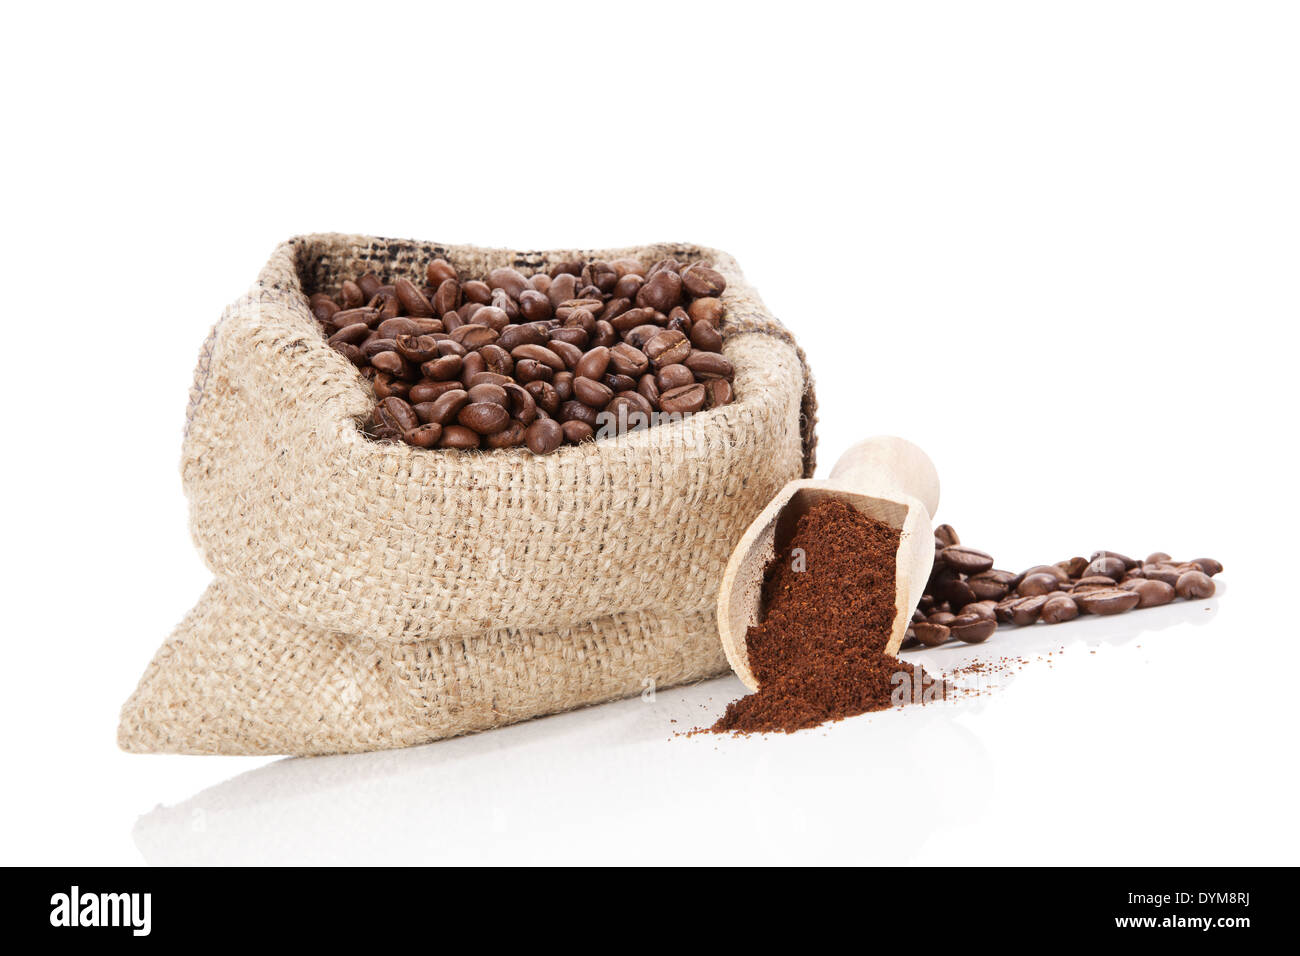 Brown sac de grains de café, café moulu et écope en bois isolé sur fond blanc. Café culinaire nature morte. Banque D'Images